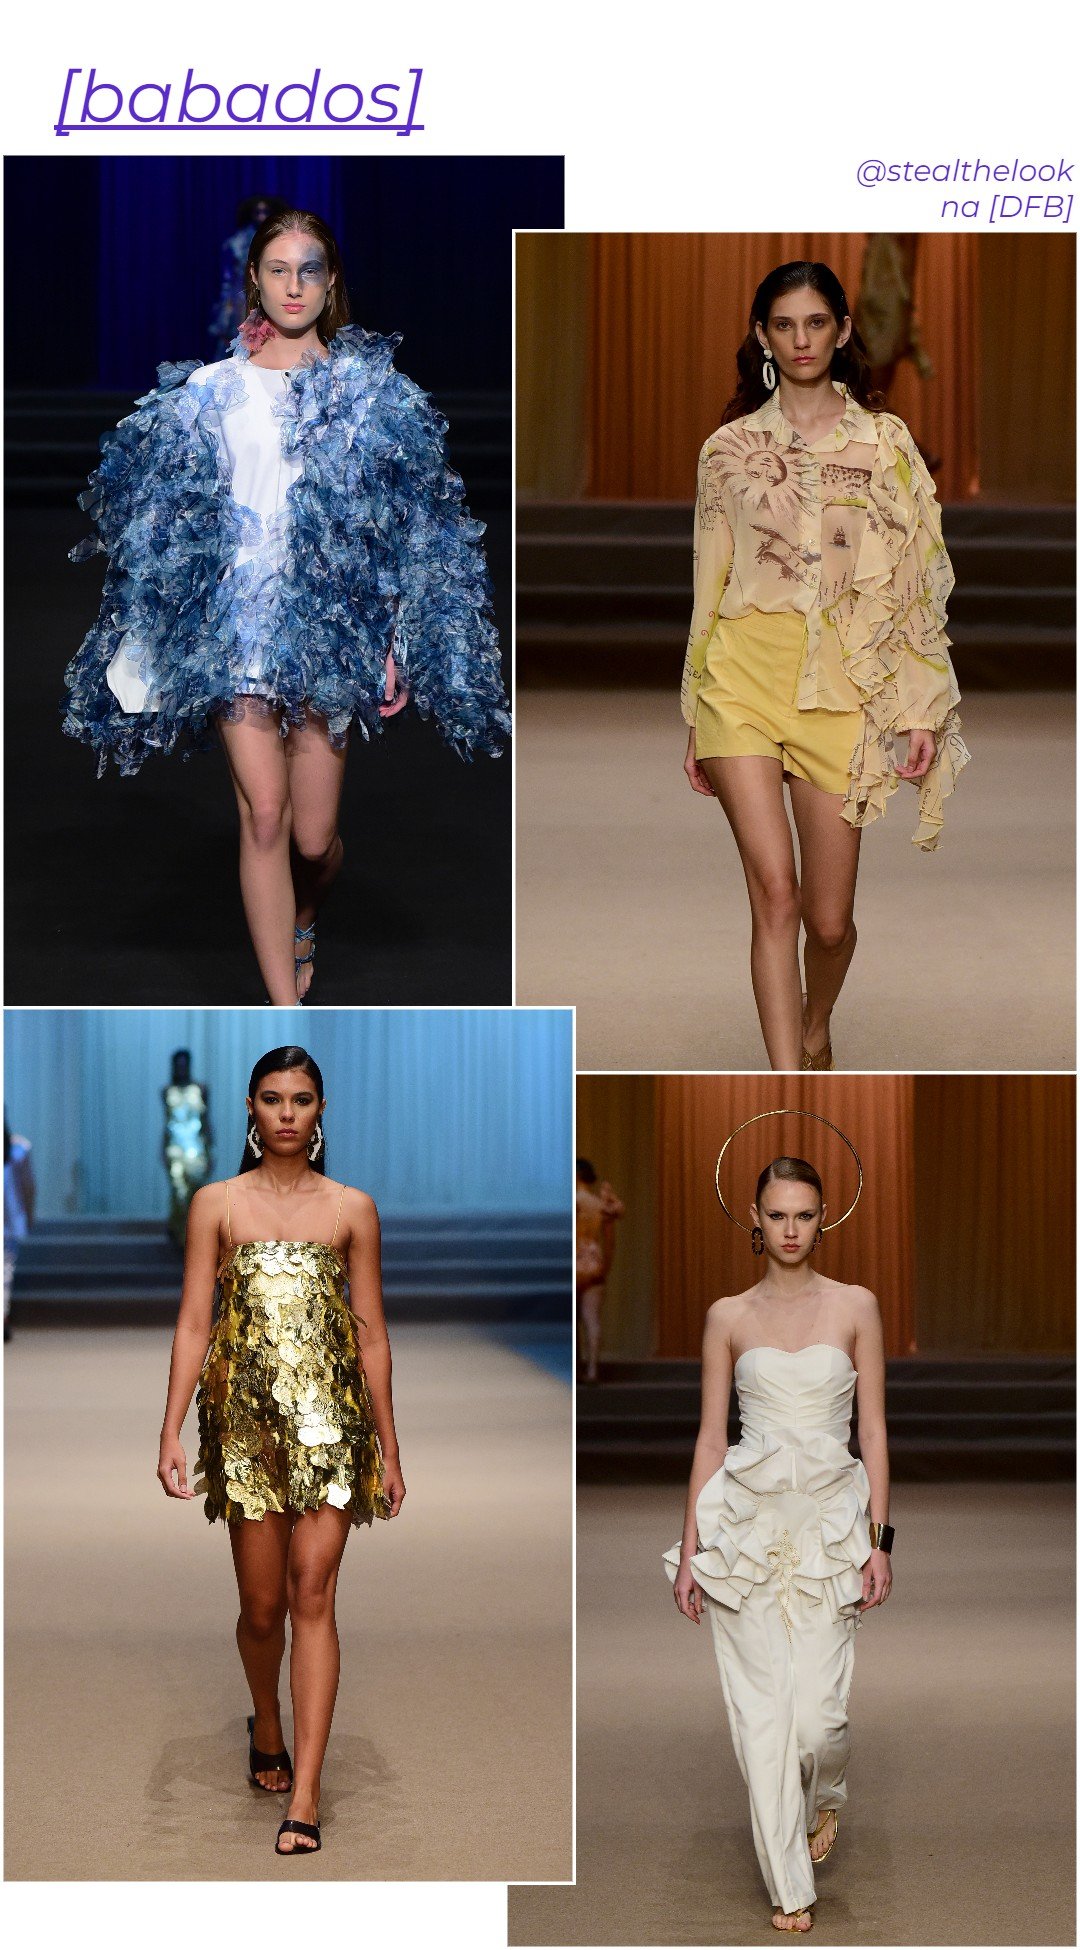 Norb Brand, DriblledSau + Sheila Moraes, Queiroz Bruno - dfb - tendências de moda e beleza - outono - brasil - https://stealthelook.com.br